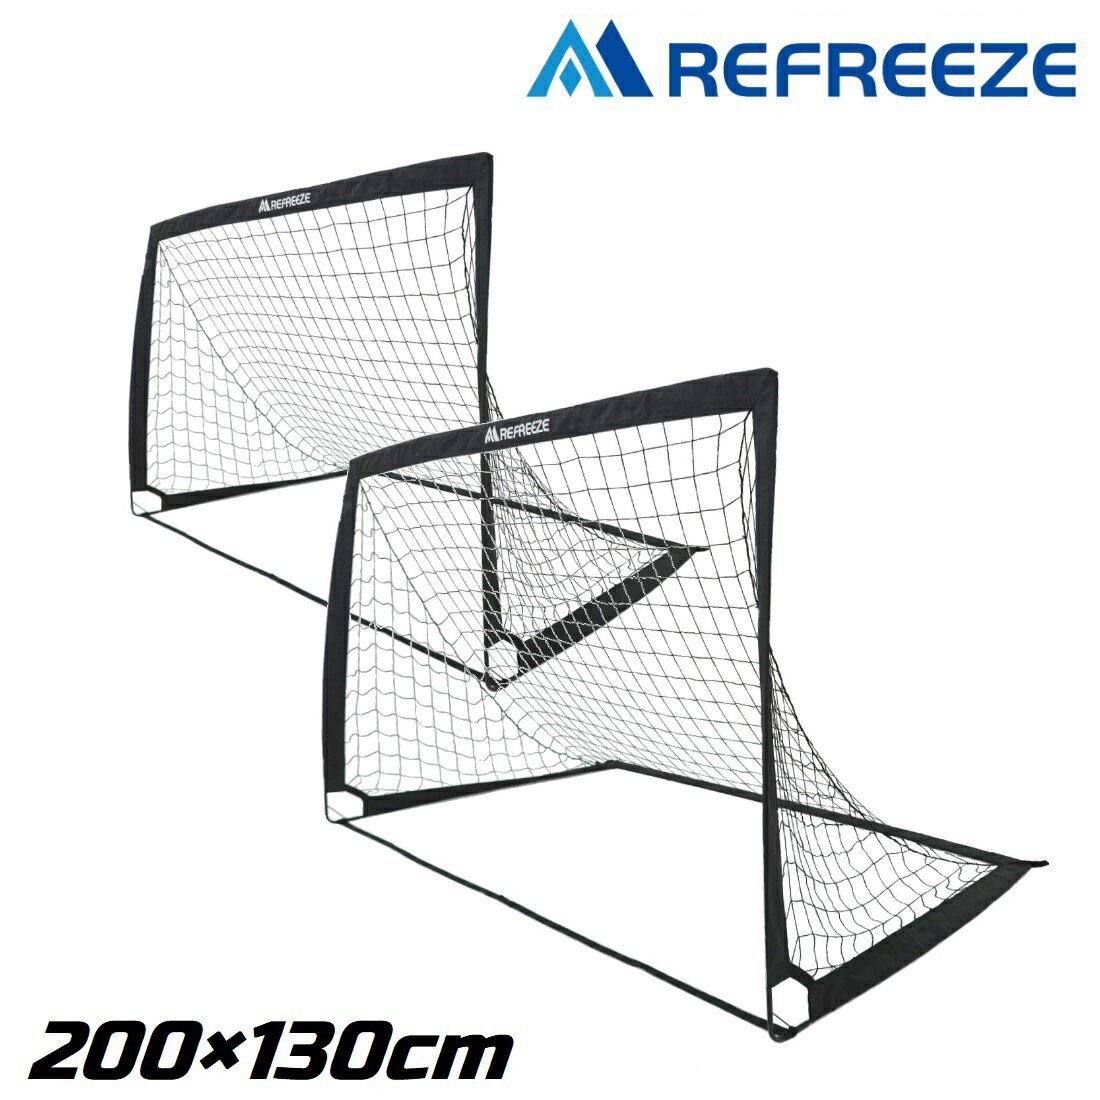 REFREEZE(リフリーズ) 200×130cm 折りたたみ サッカーゴール ブラック 2個セット 収納バッグ付き ポータブル フットサルゴール